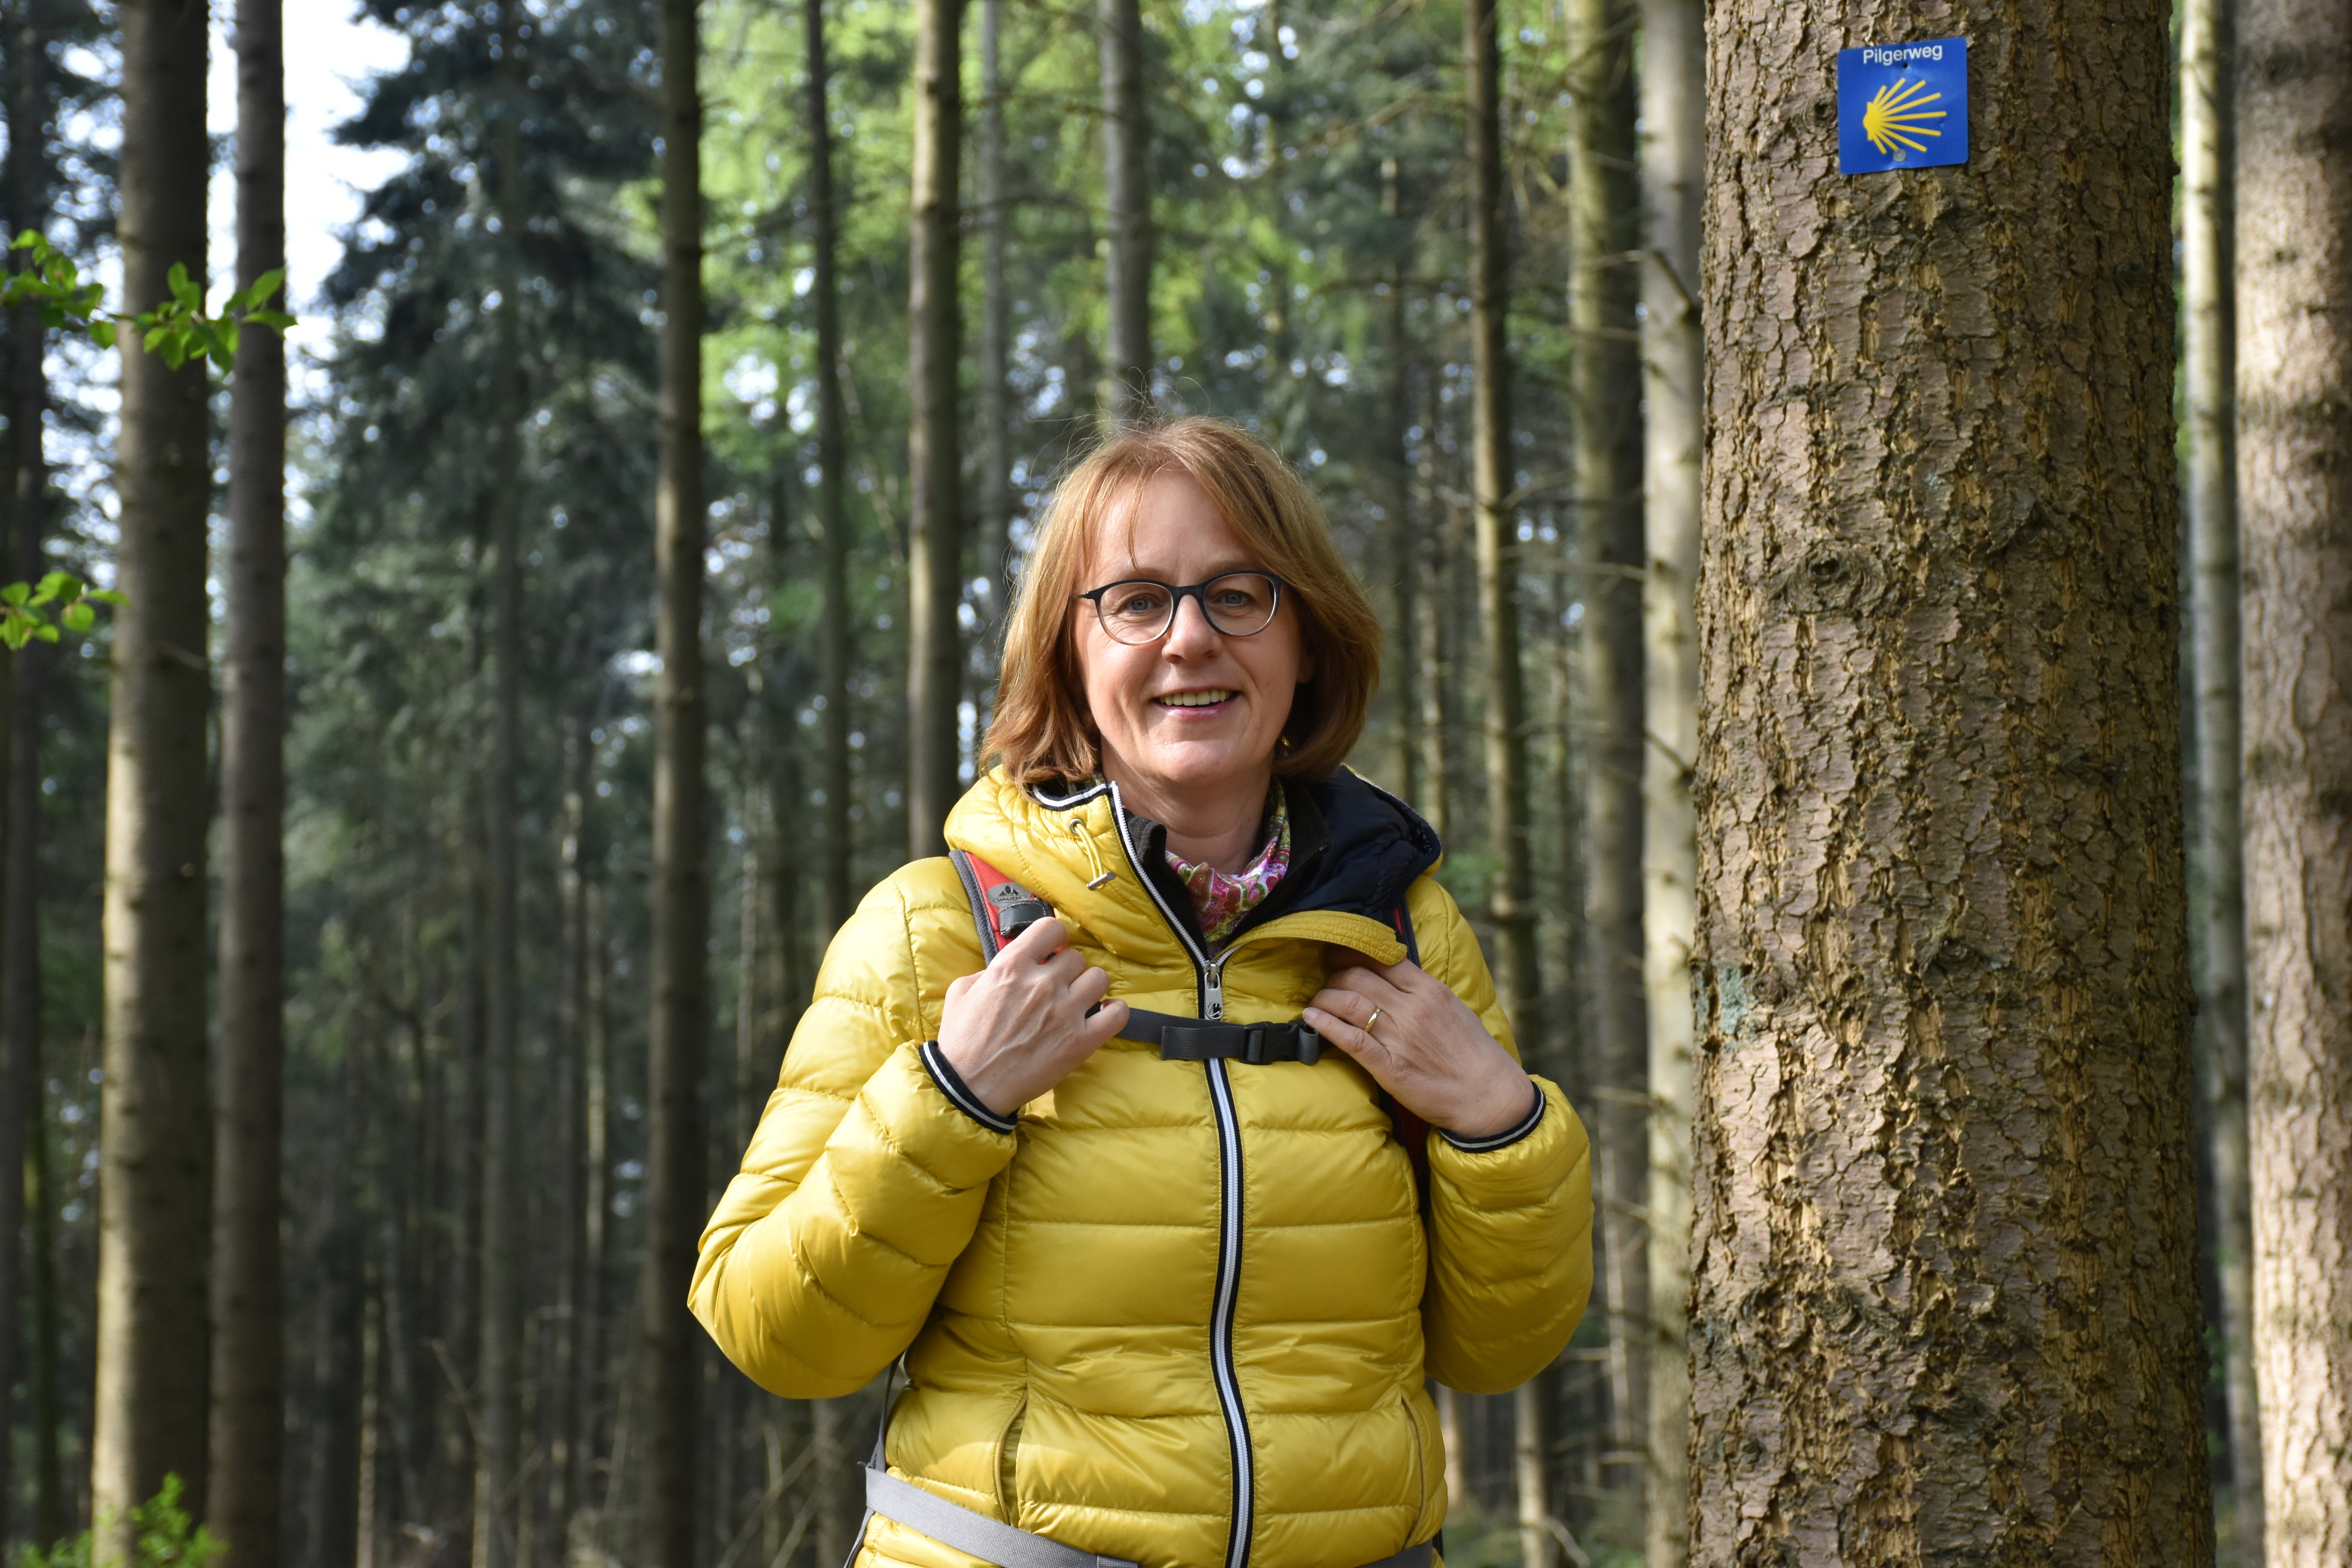 Birgit Schlarmann aus Steinfeld ist gerne in der Natur unterwegs. Foto: Timphaus